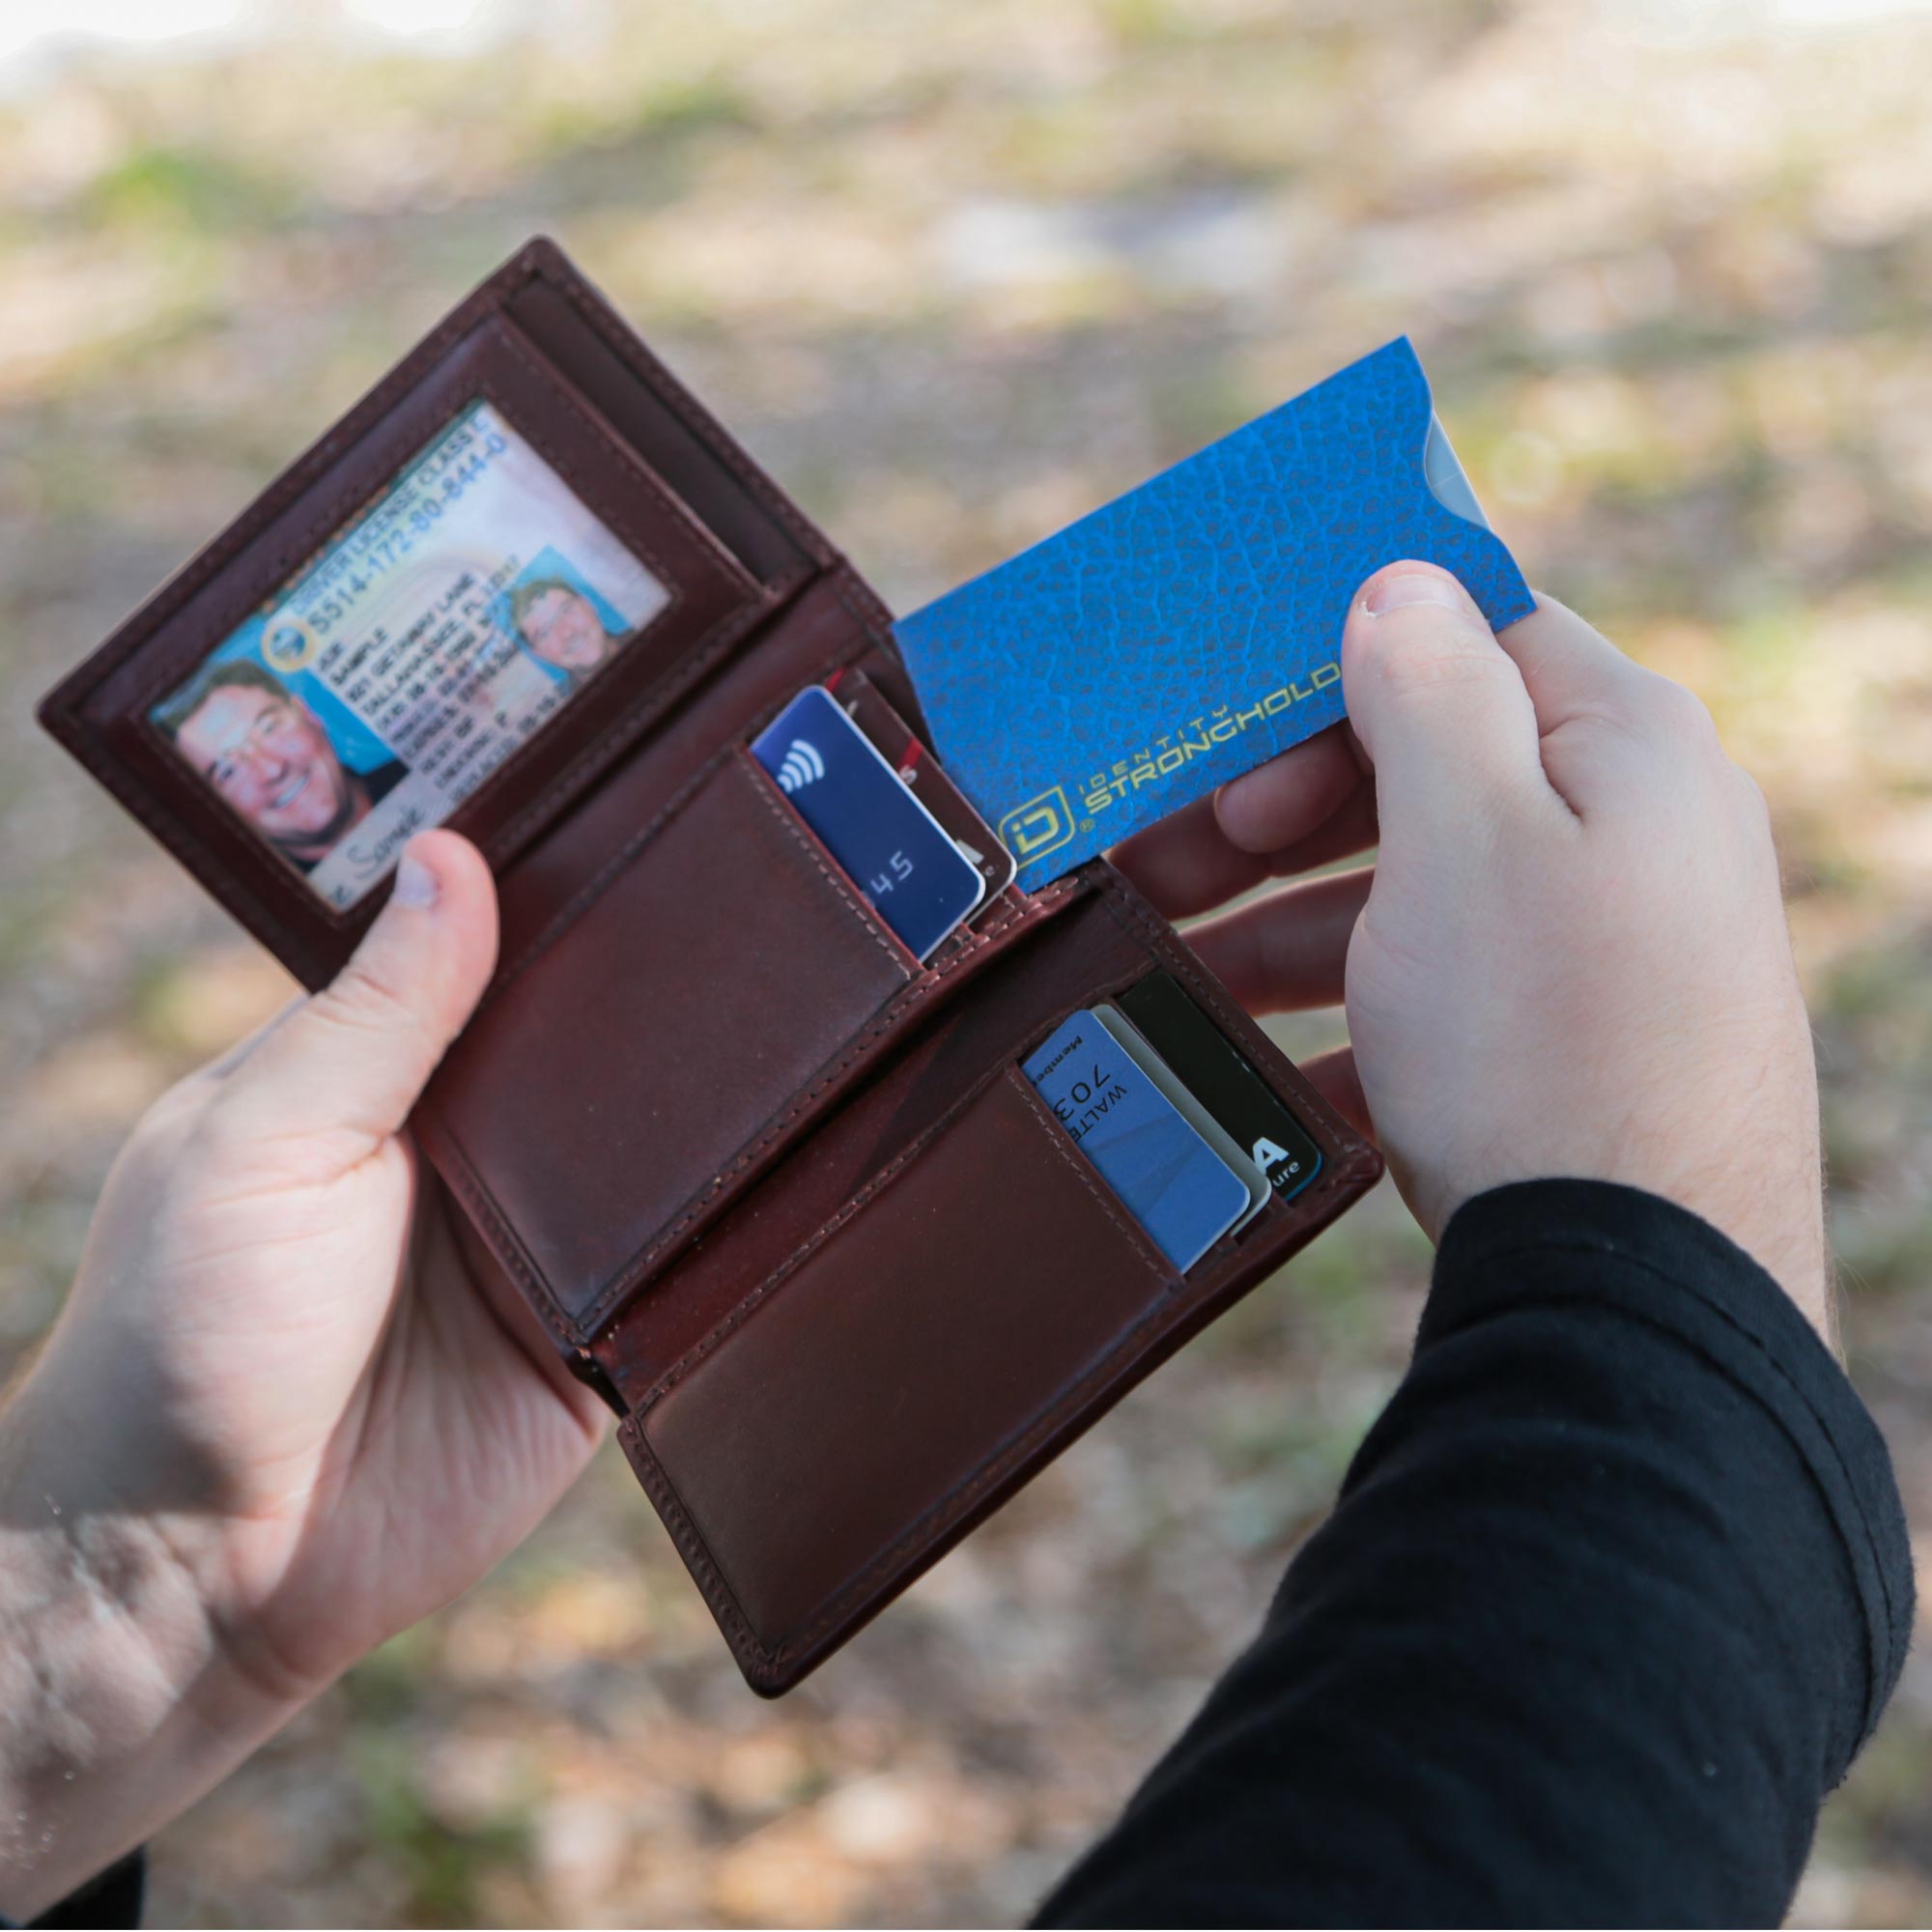 RFID Blocking Credit Card Sleeves - Leather Look 8 Pack